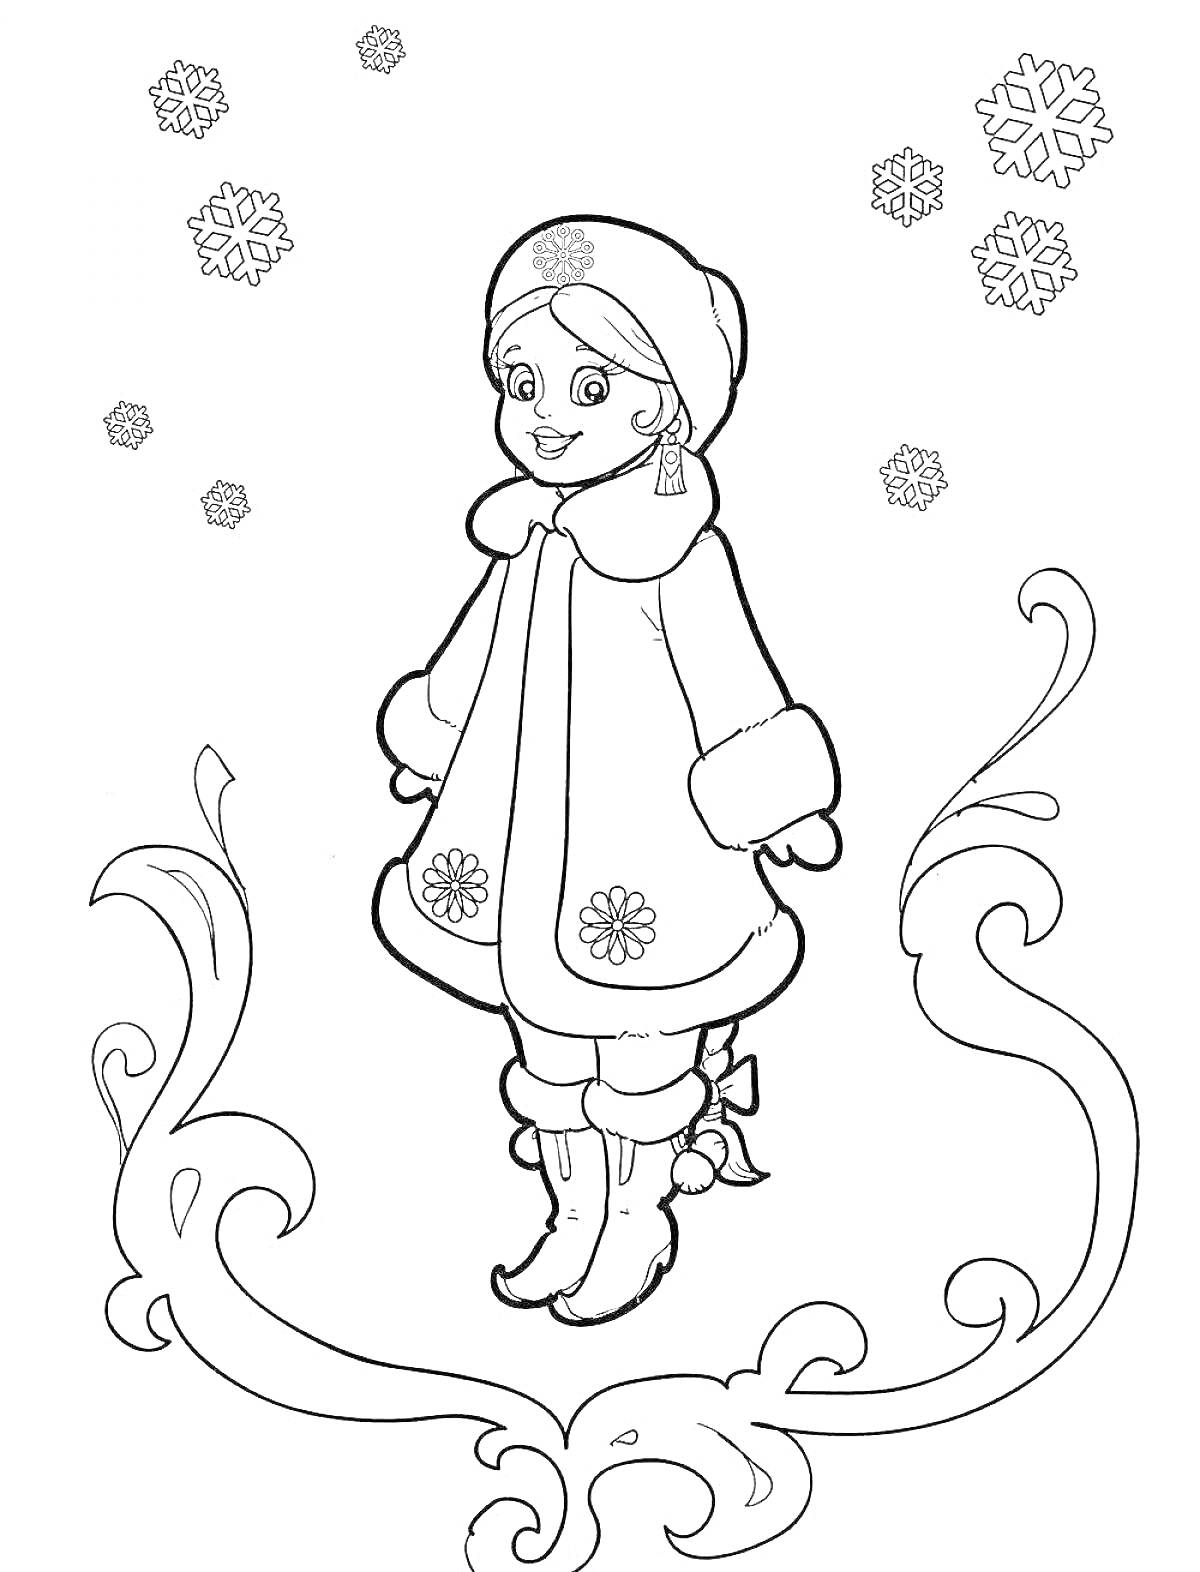 Раскраска Девочка-снегурочка в зимней одежде, снежинки, узорчатая рамка